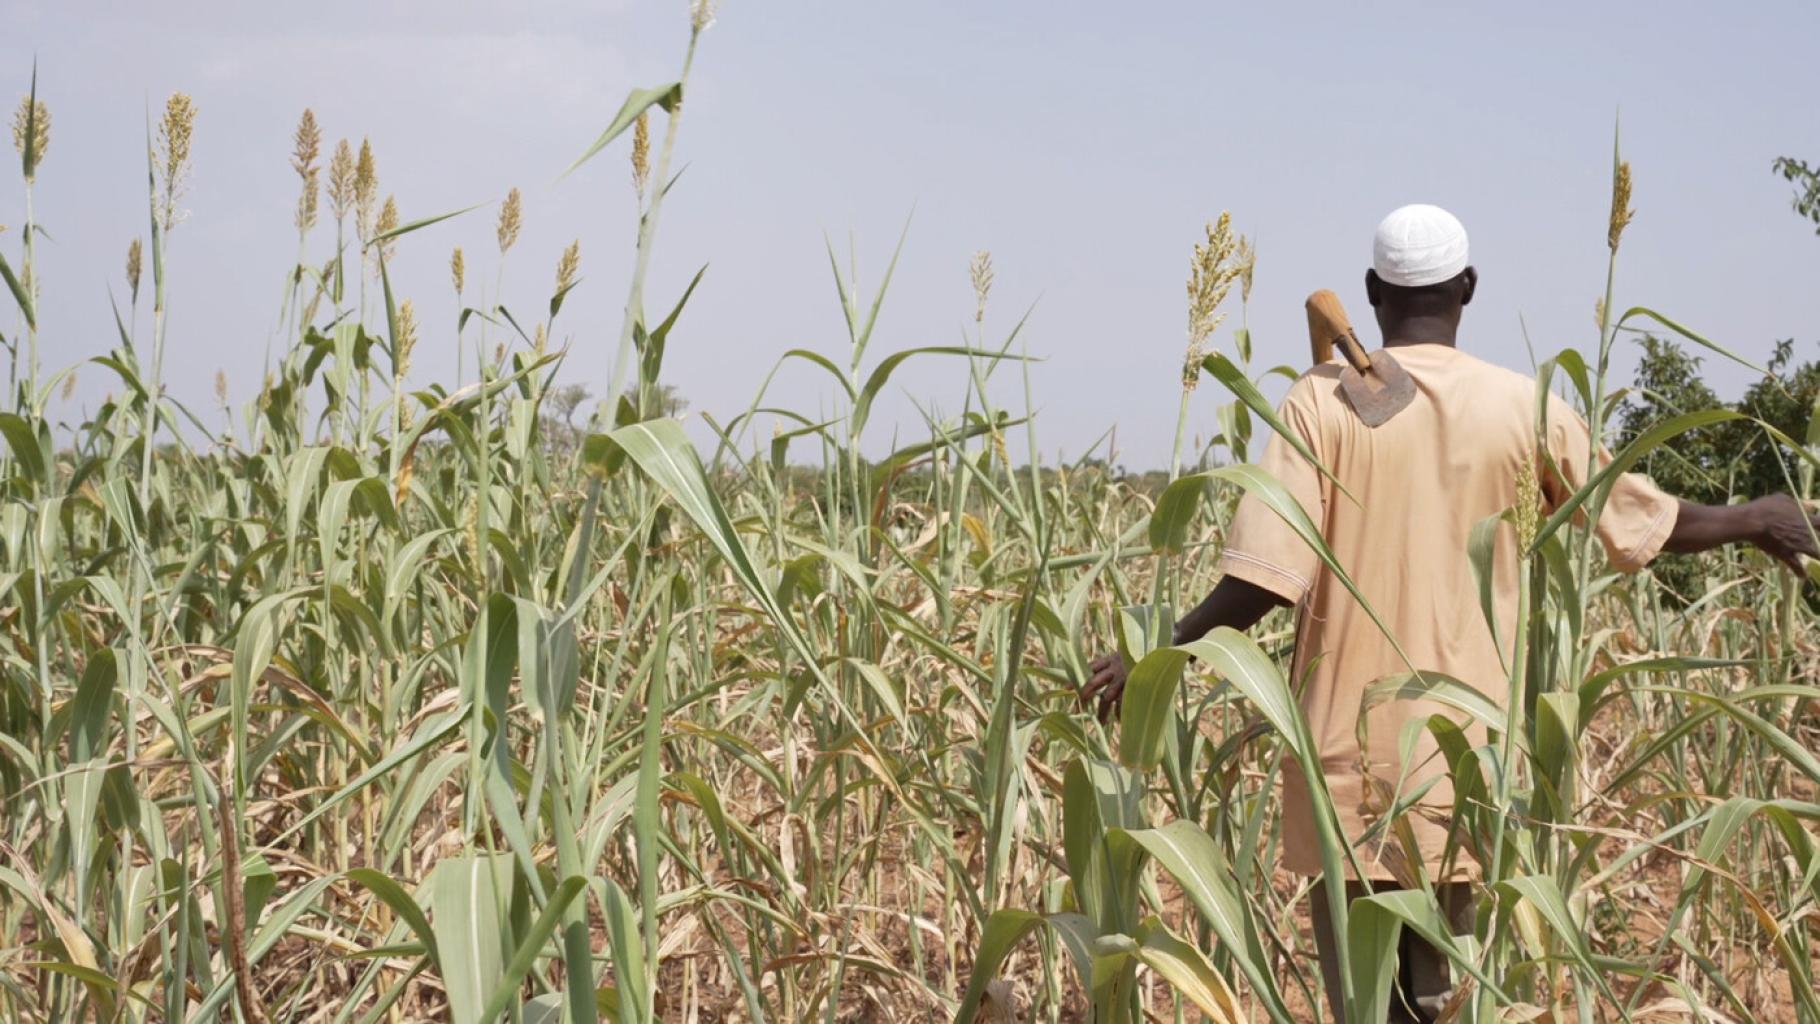 Idrissa Ouedraogo ist ein Bauer in der Region Centre-Nord in Burkina Faso. Er steht mit dem Rücken zur Kamera in einem Feld, das sehr trocken aussieht.